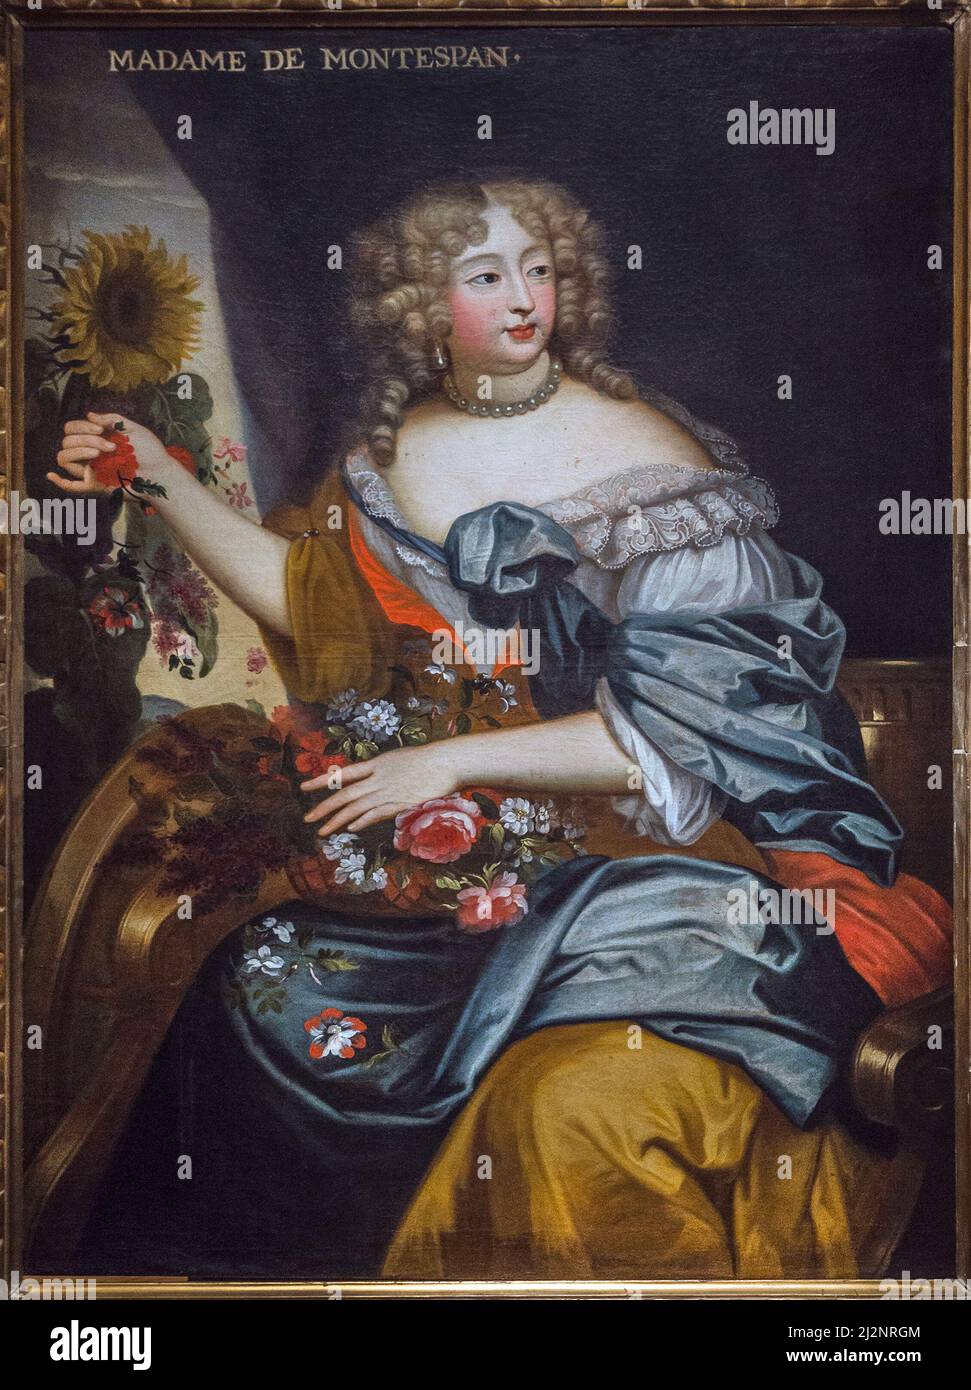 Portrait de Madame de Montespan en flore - Marquise de Montespan - huile sur toile- 17eme siecle - Le Mans Musée de Tessé Stockfoto